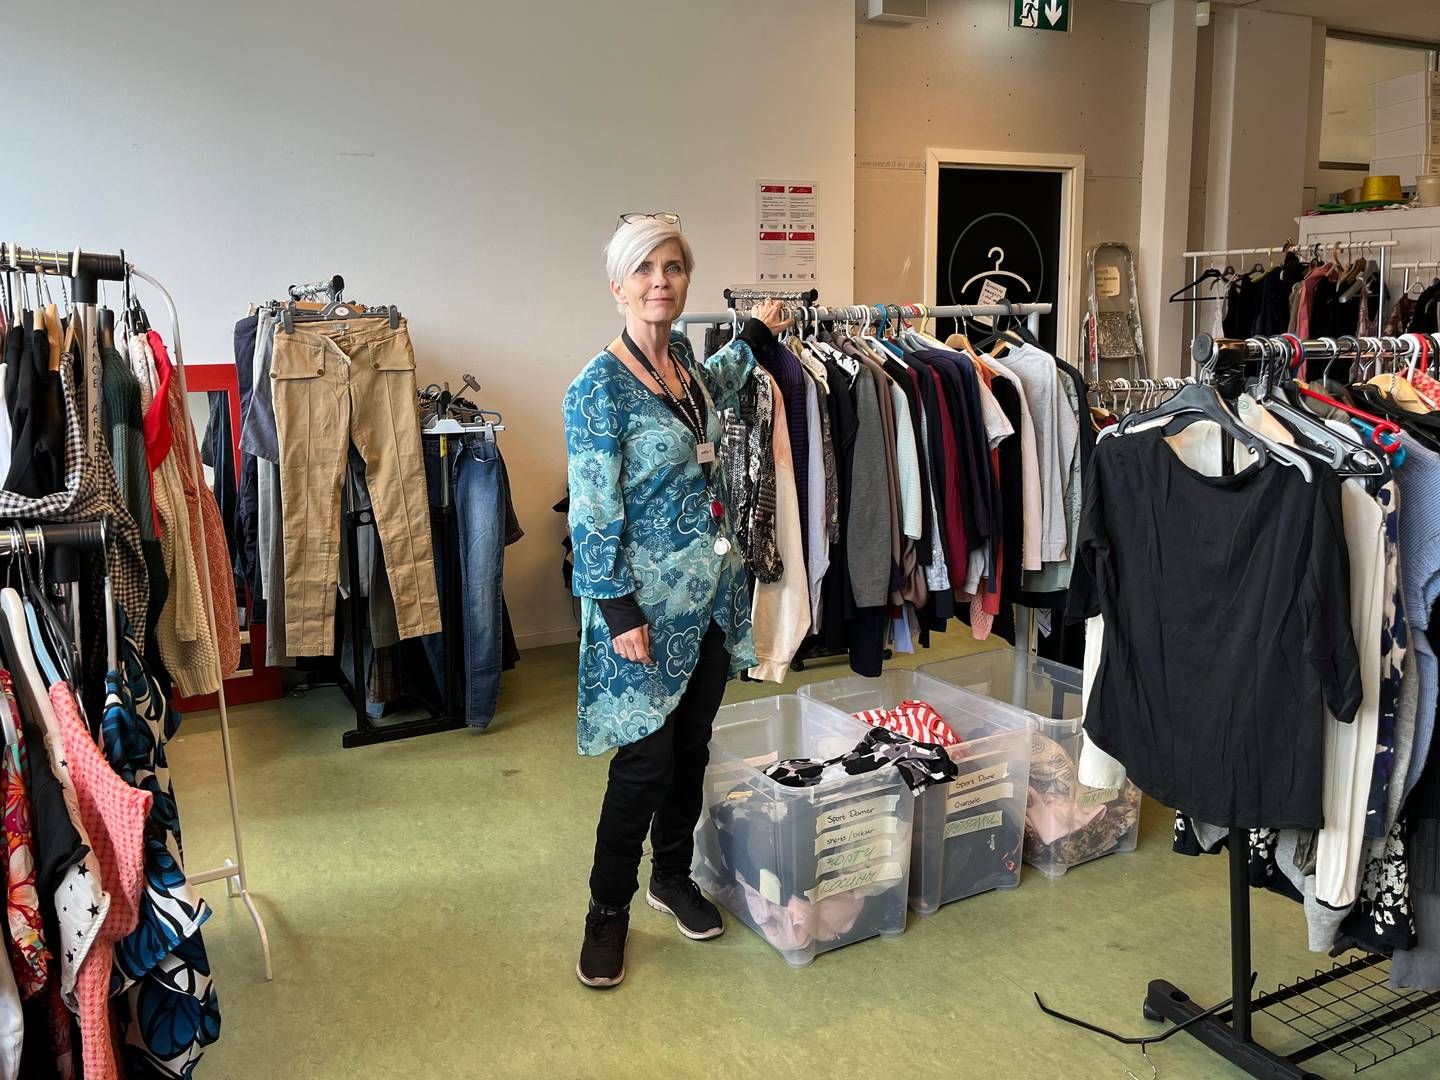 Dorthe Hornhaver i Bixen som giver donationer gratis videre til flygtninge. "Det er først og fremmest tøj til børn og voksne, elektronik, ting til boligen, bøger, personlig pleje, håndklæder og sengelinned." | Photo: Privat